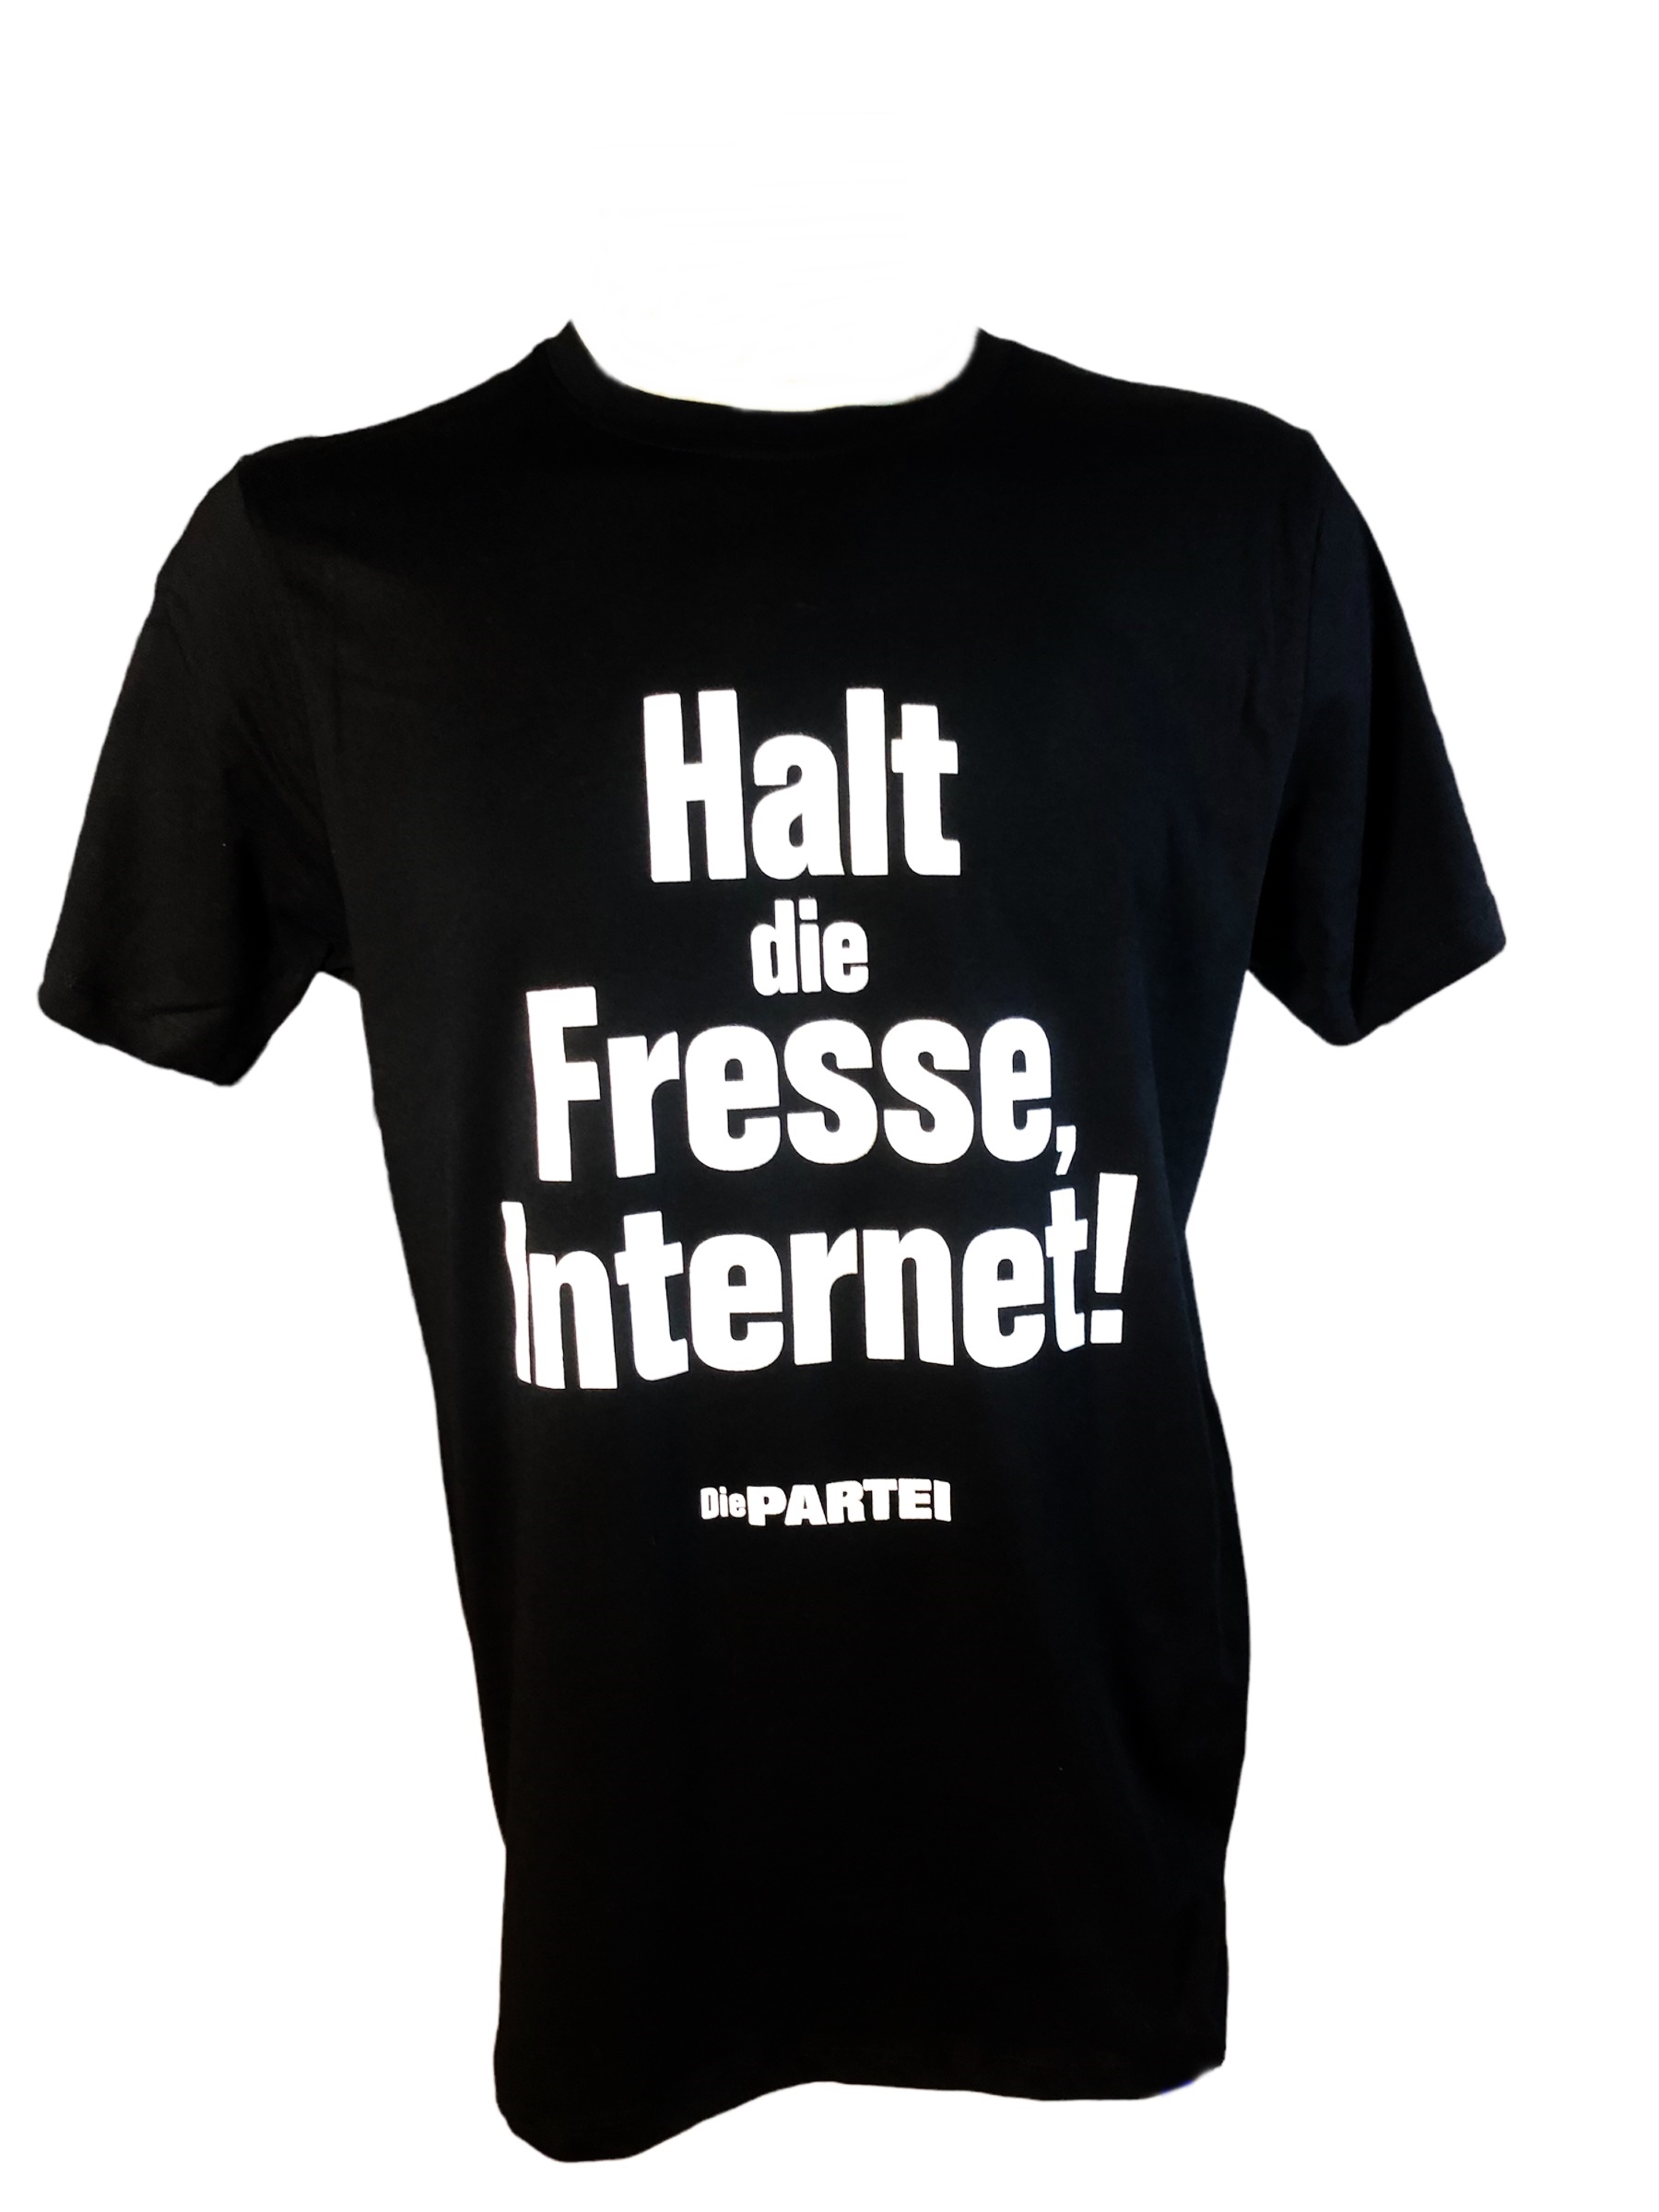 PARTEI Shirt: Halt die Fresse, Internet!